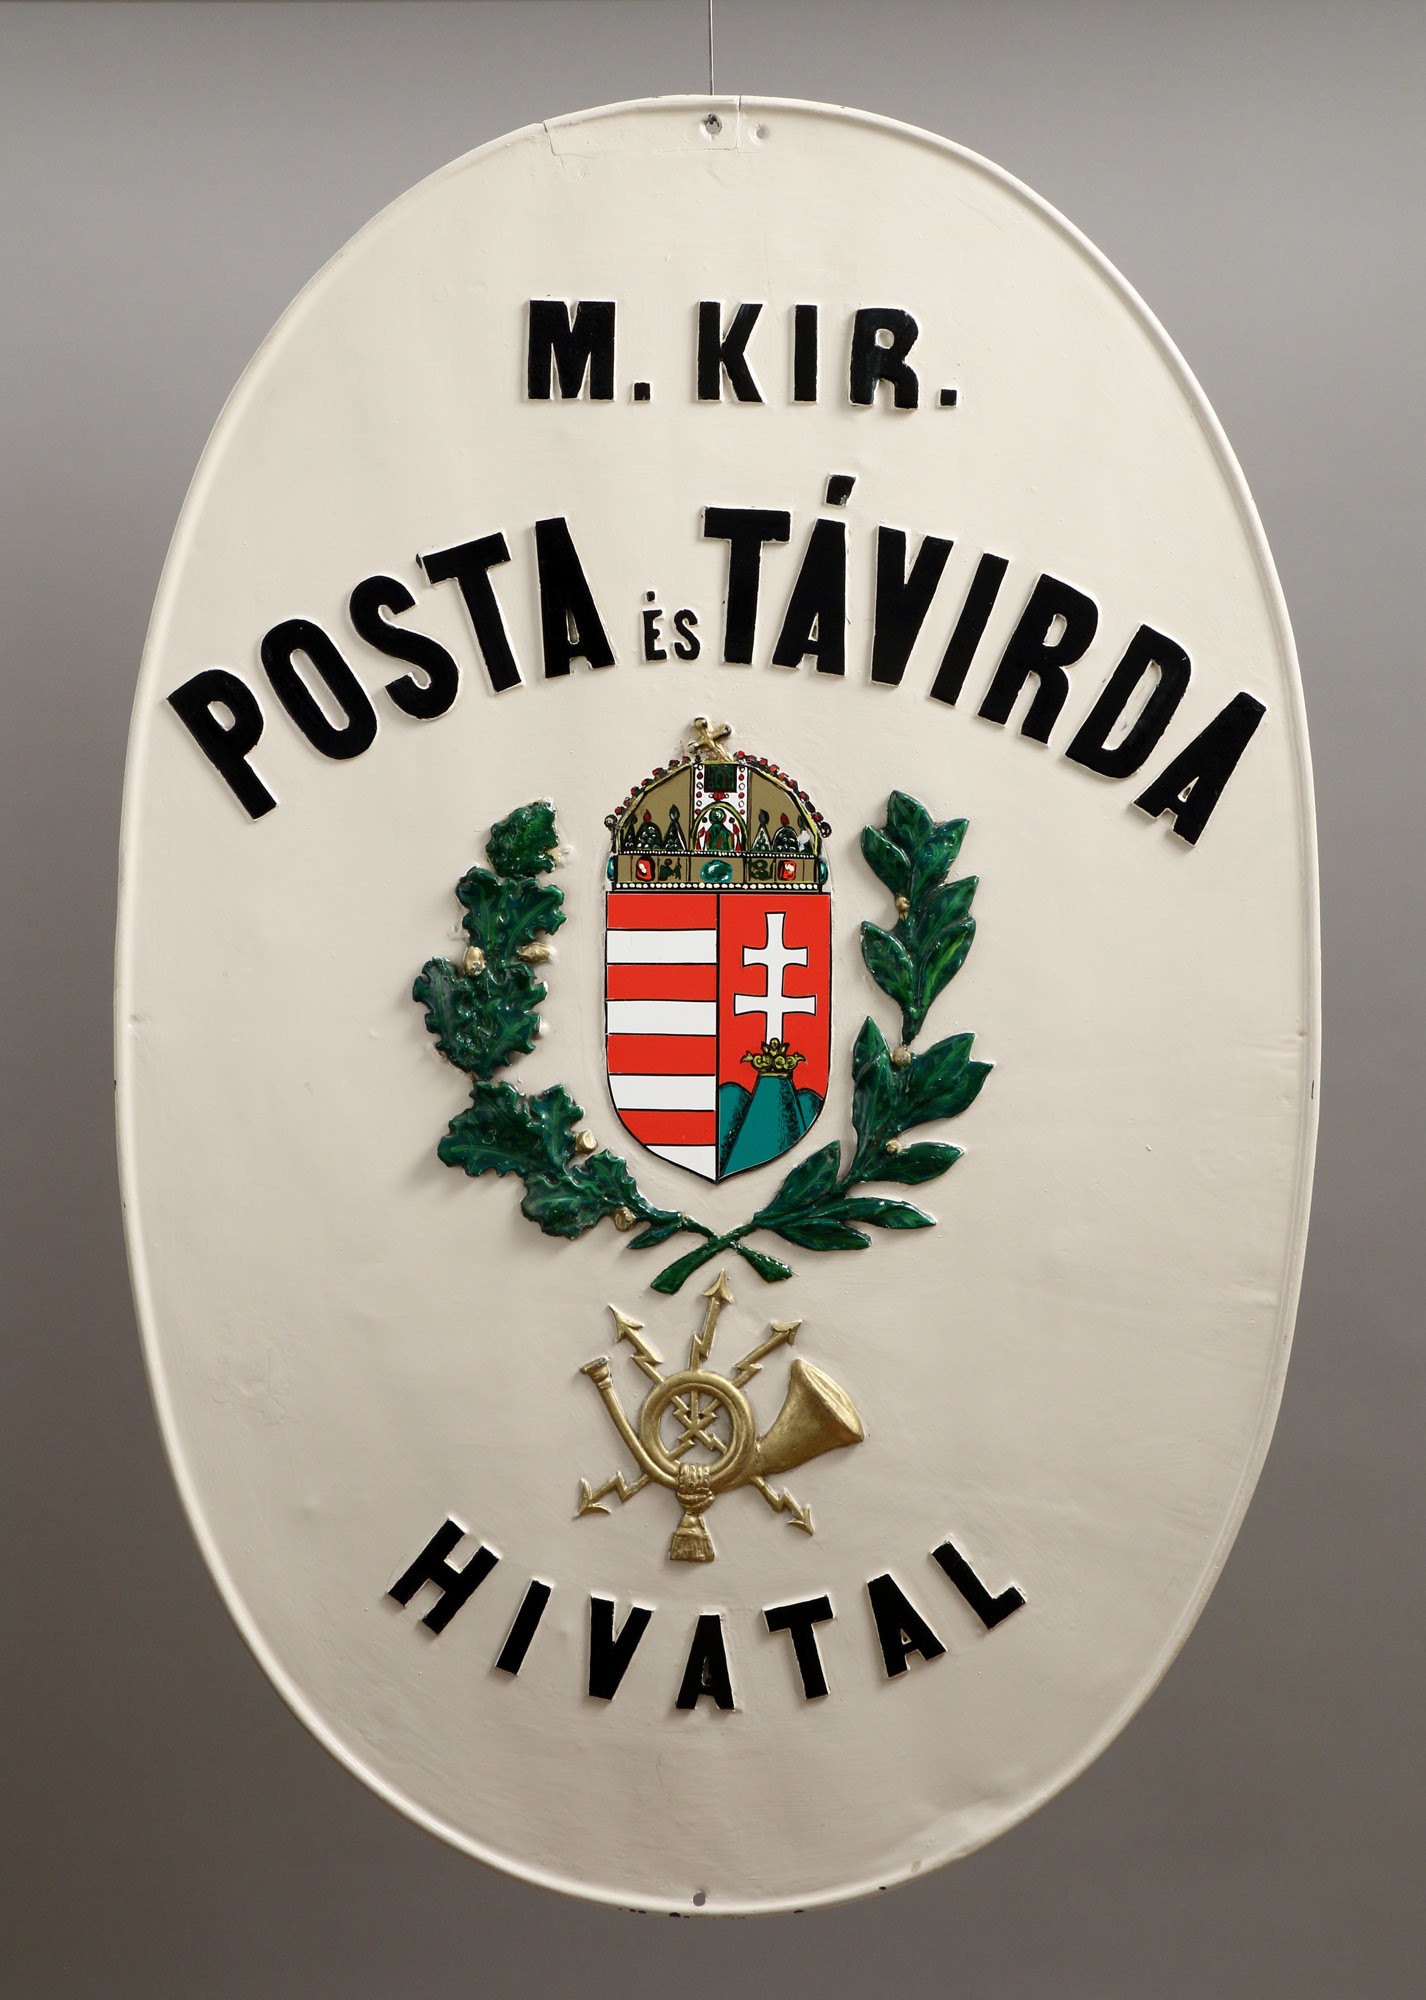 Címertábla (ovális, koronás címerel, bojtos postakürtttel) "M. KIR. POSTA ÉS TÁVIRDA HIVATAL" (Postamúzeum CC BY-NC-SA)